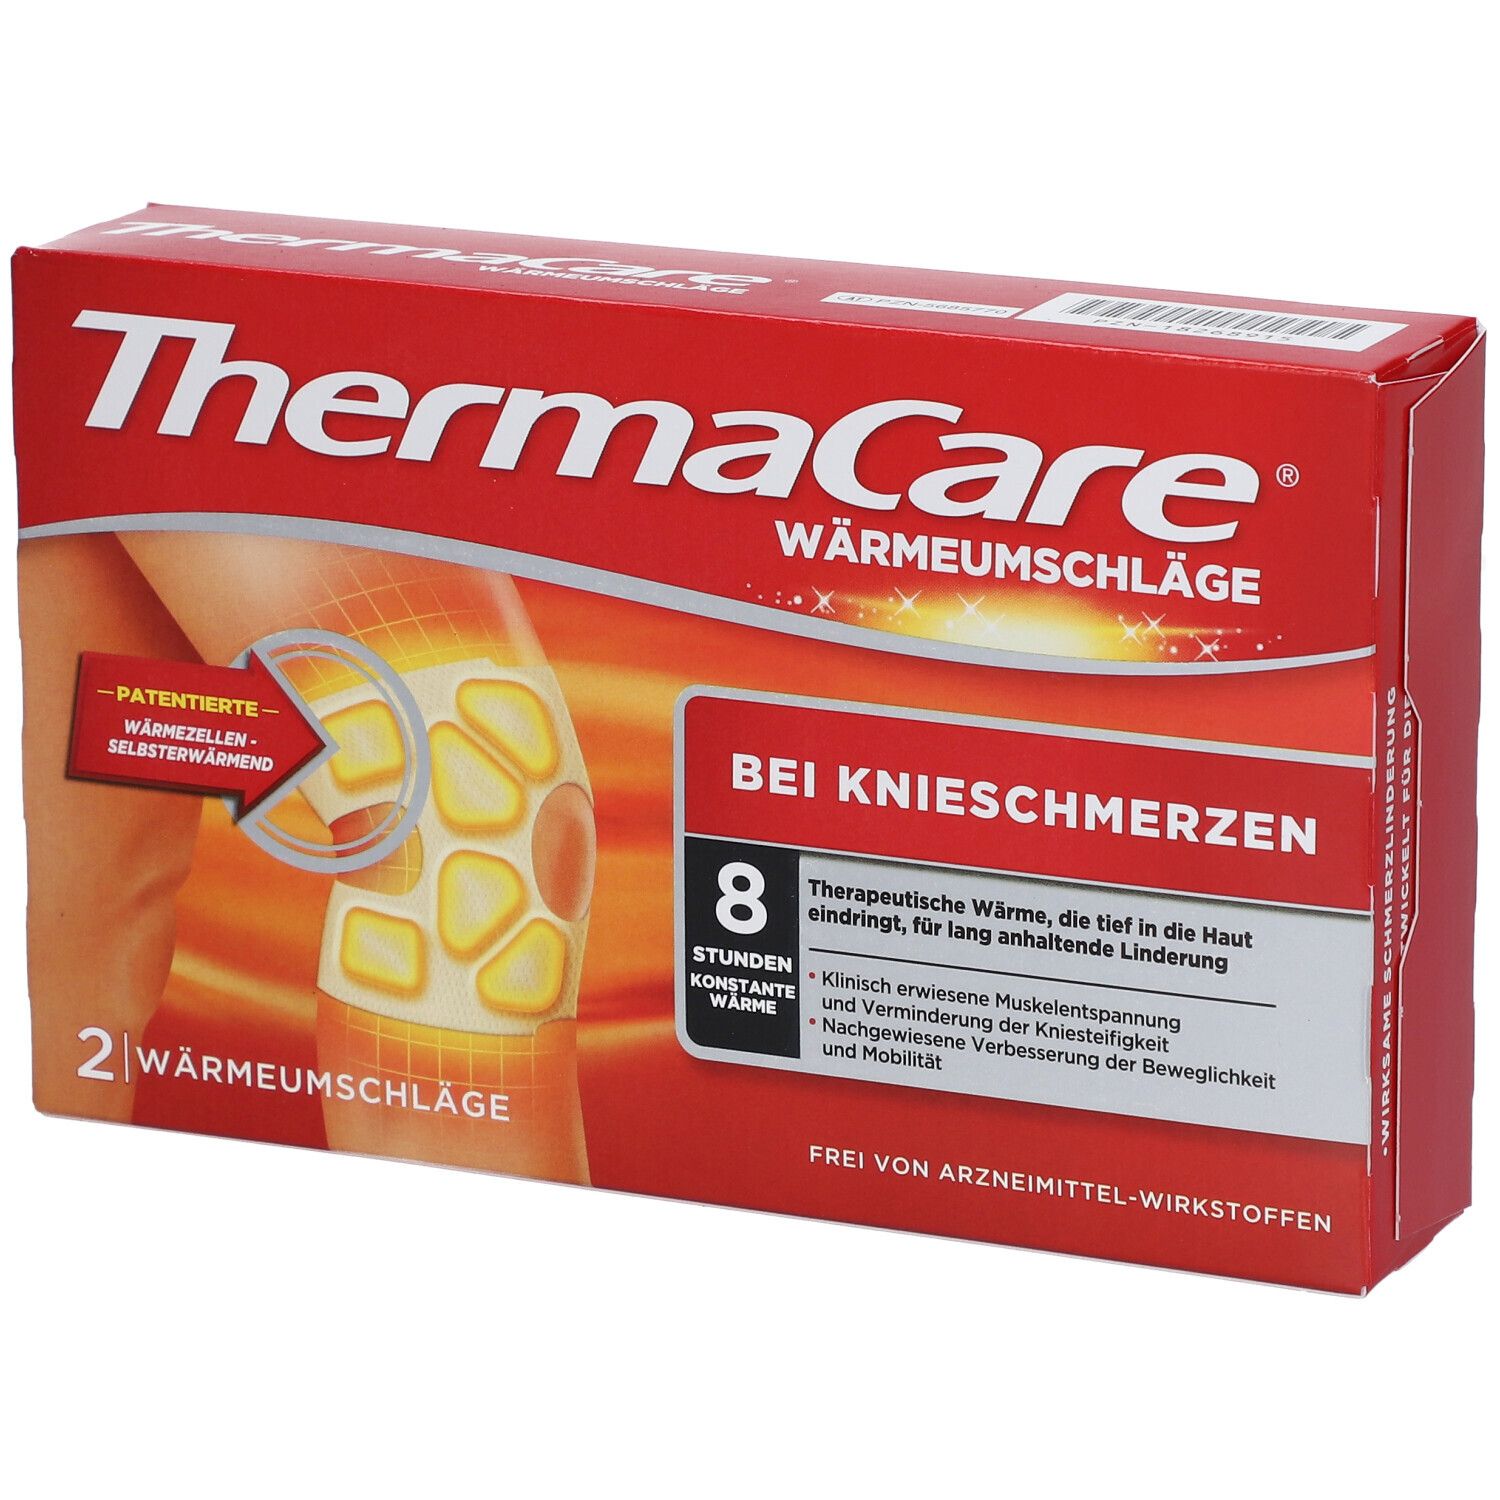 Thermacare® Wärmeumschläge bei Knieschmerzen